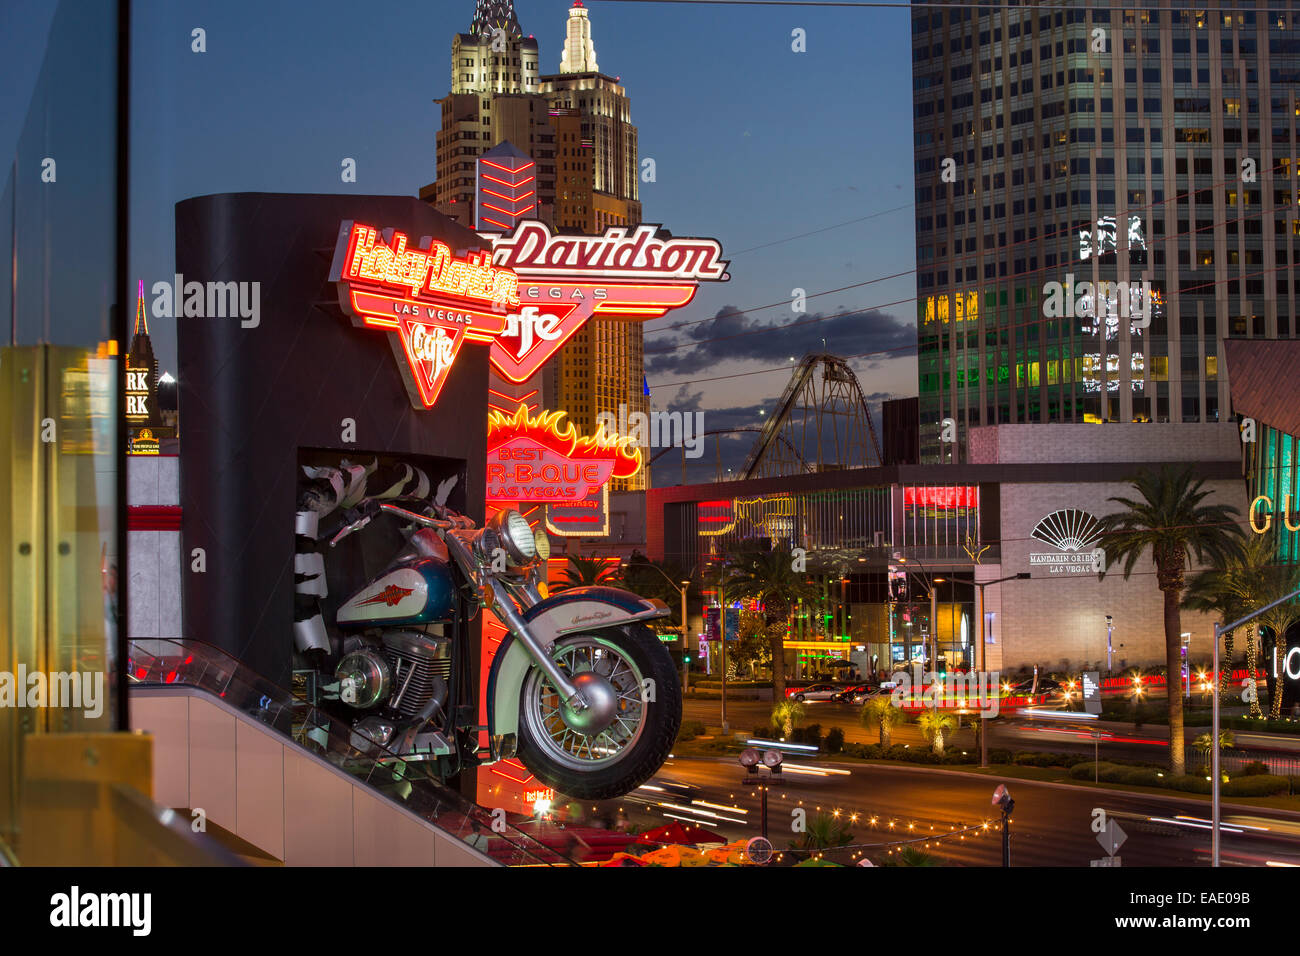 Das Harley Davidson Cafe am Las Vegas Boulevard in der Abenddämmerung, Las Vegas, Nevada, USA, wohl am meisten unhaltbar Stadt der Welt, nutzt es Unmengen von Wasser mitten in der Wüste und große Mengen an Energie an das macht verschwenderischsten der Städte. Stockfoto